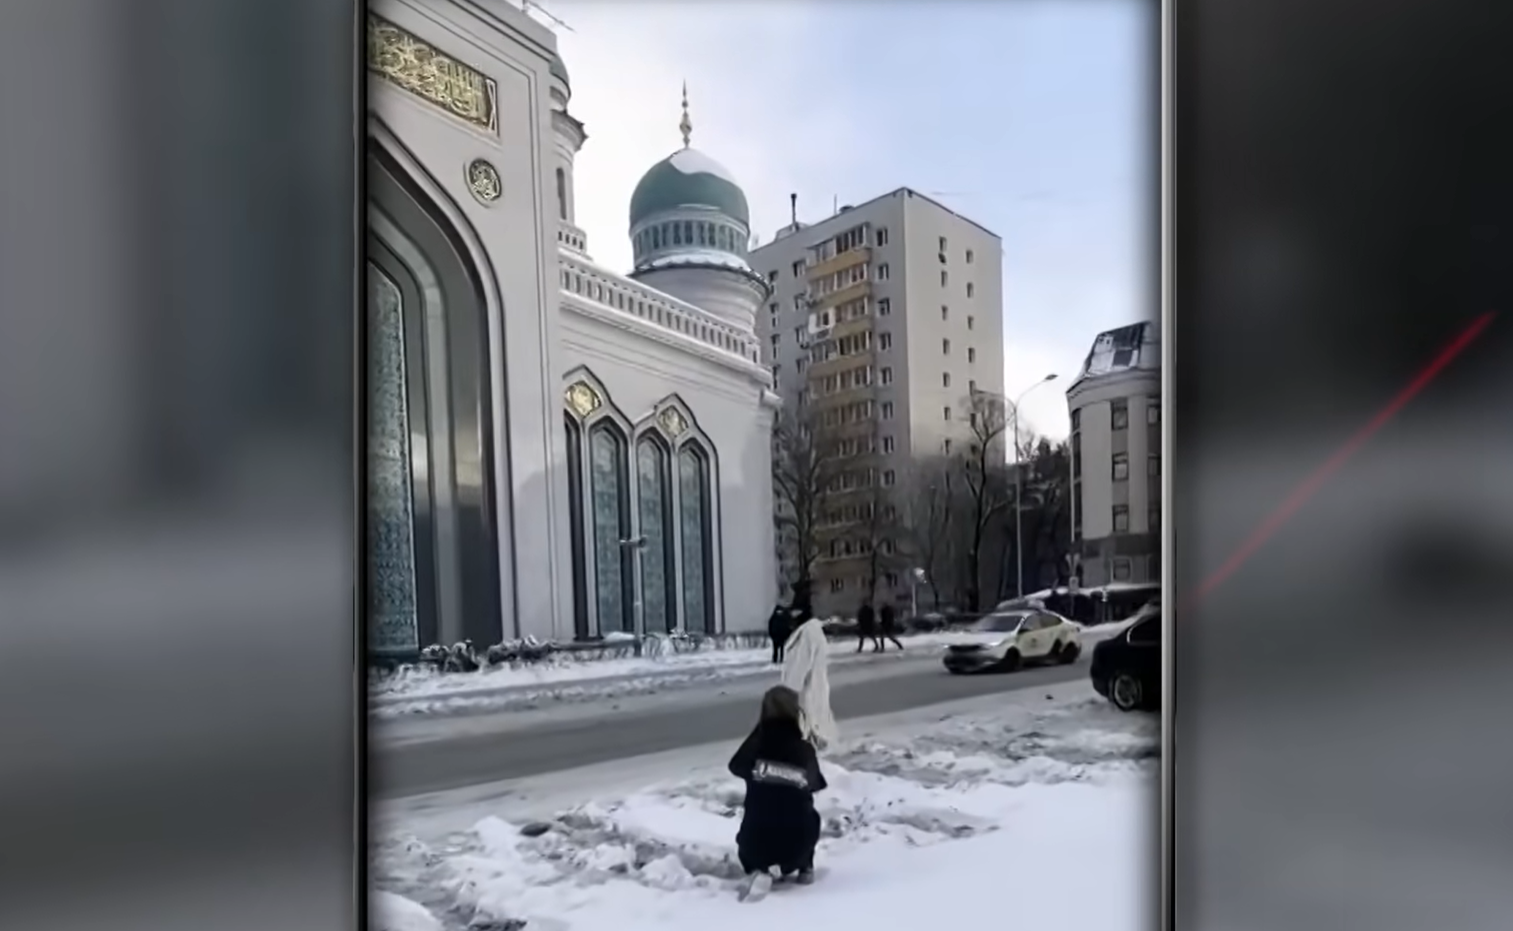 Съемки на фоне мечети. Скриншот видео